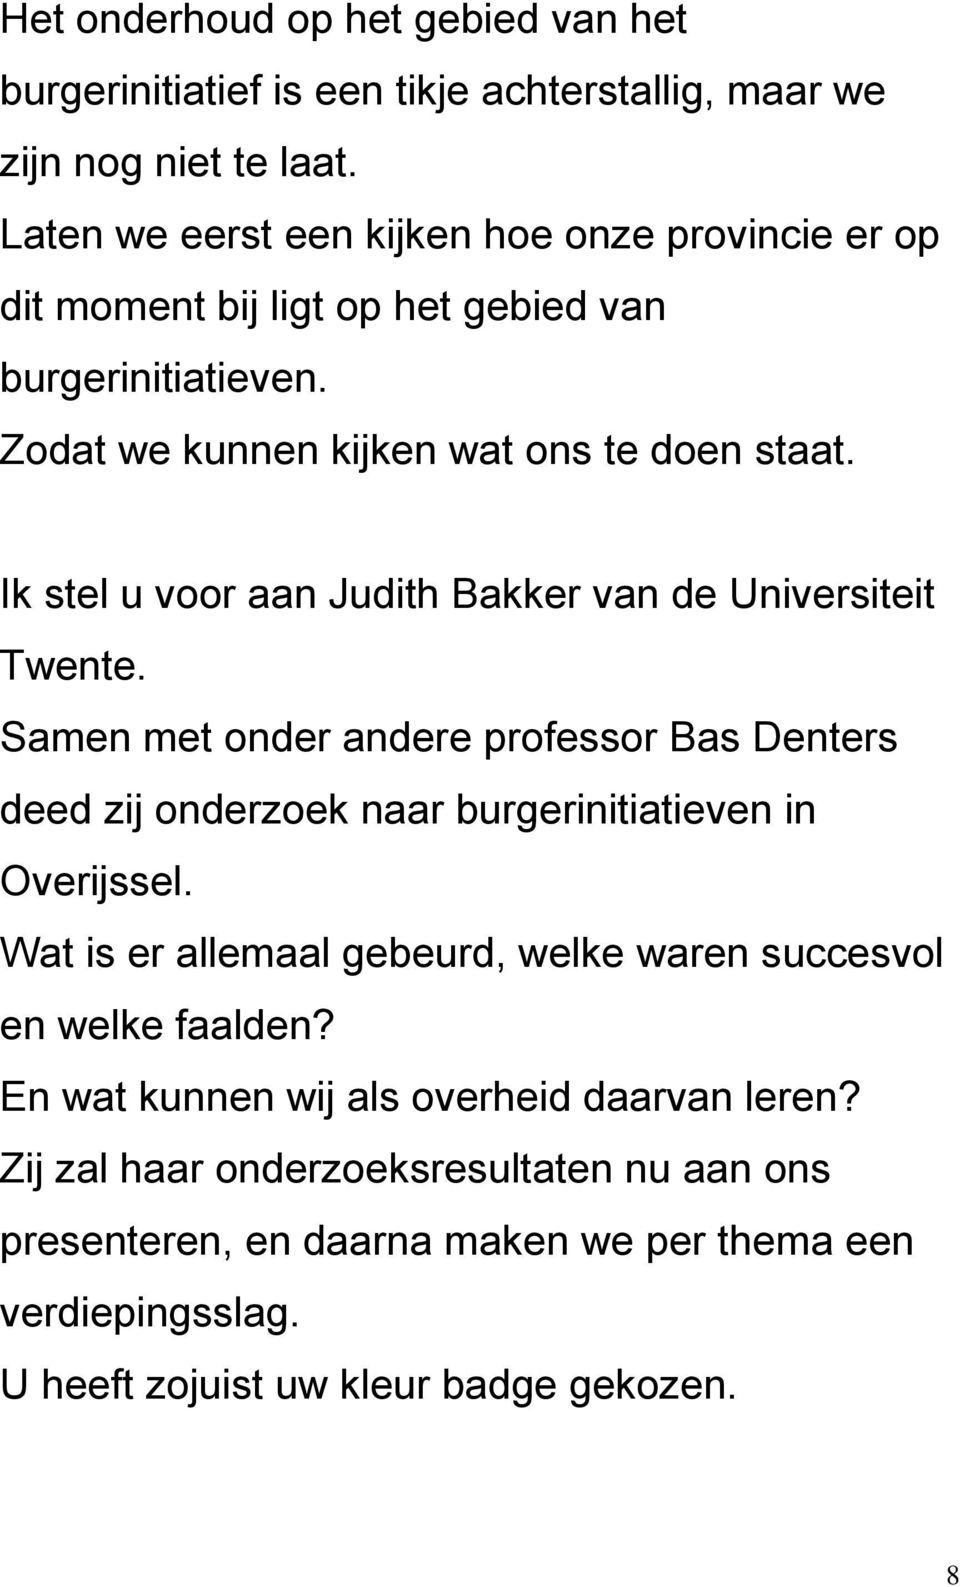 Ik stel u voor aan Judith Bakker van de Universiteit Twente. Samen met onder andere professor Bas Denters deed zij onderzoek naar burgerinitiatieven in Overijssel.